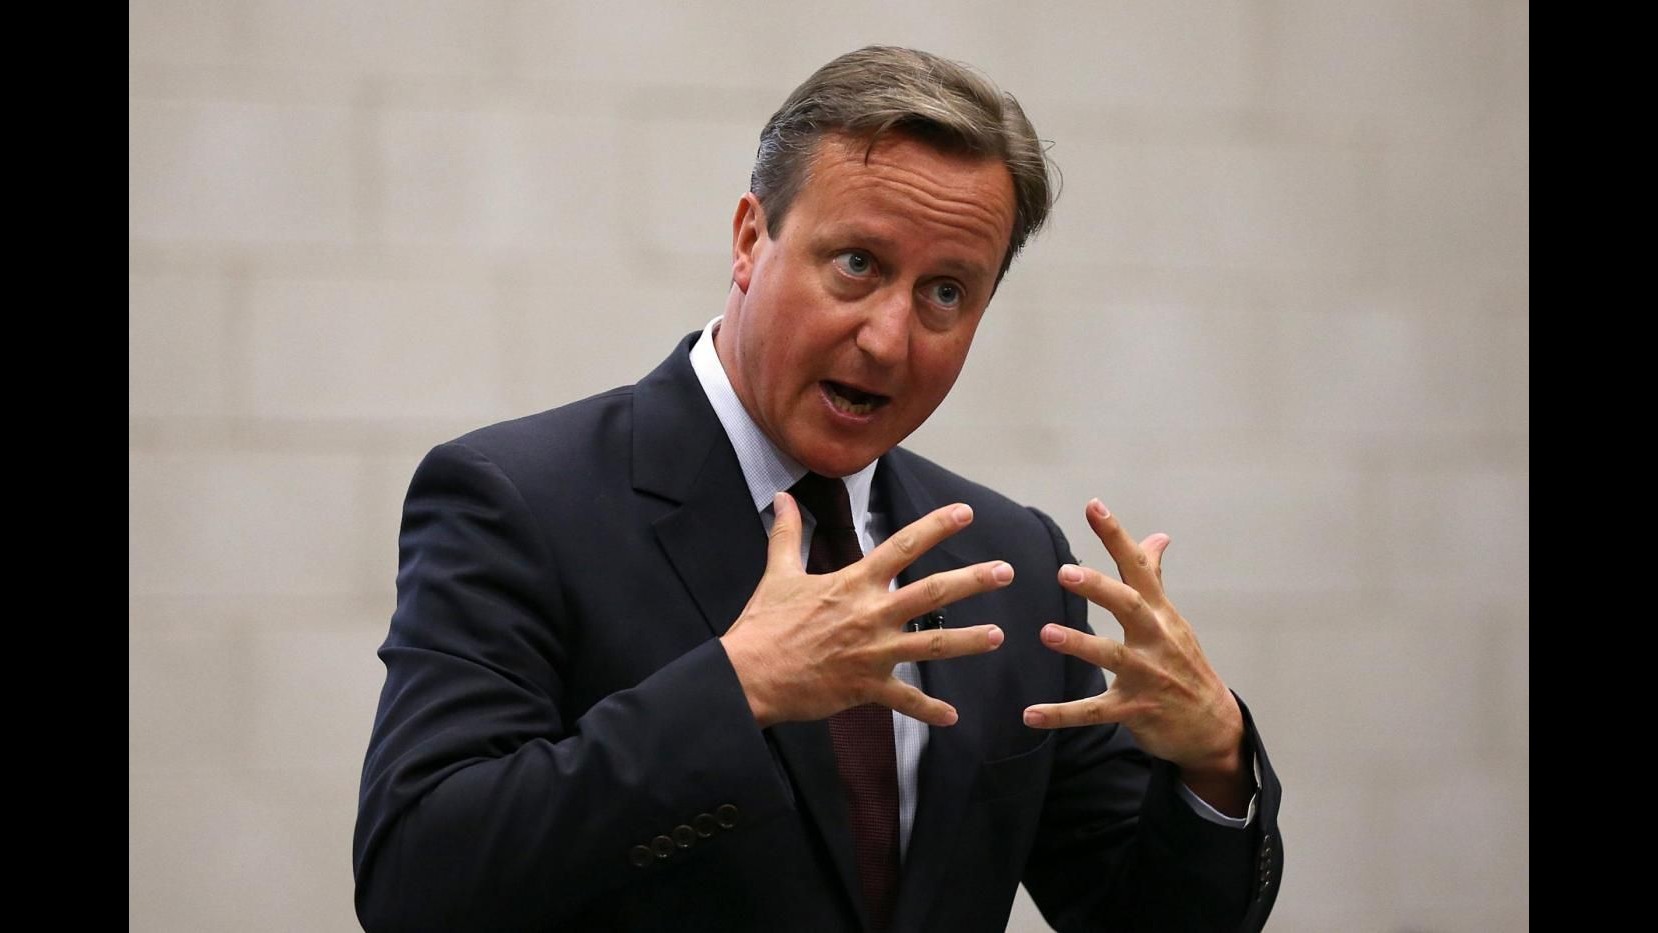 Immigrazione, Cameron: Regno Unito accoglierà migliaia profughi in più